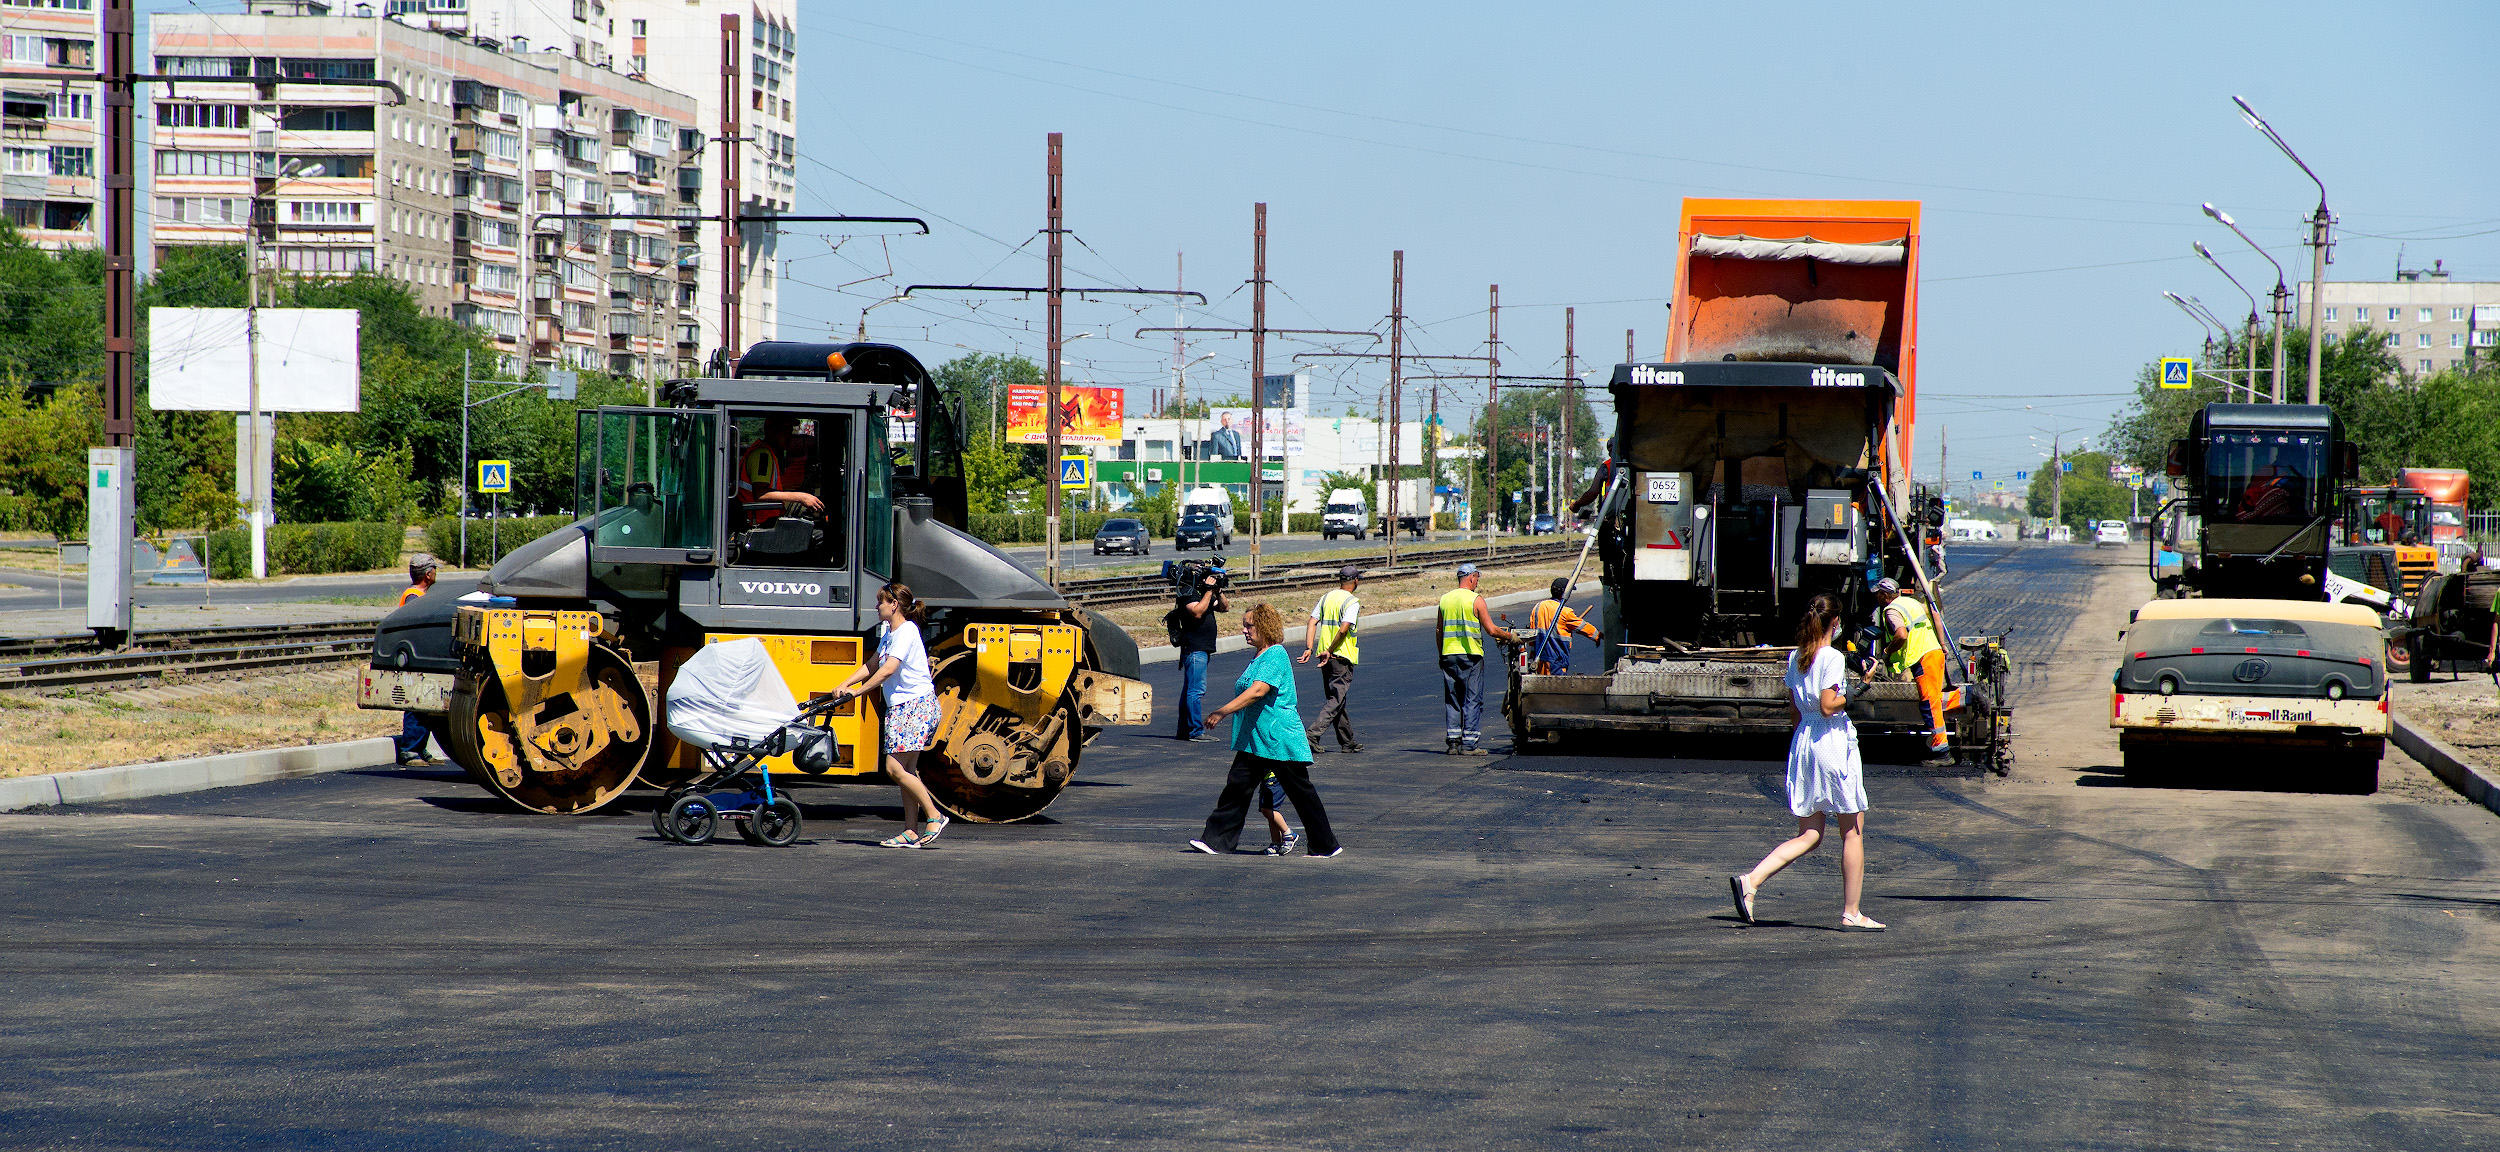 В 2021 году в Челябинске отремонтируют 6 улиц